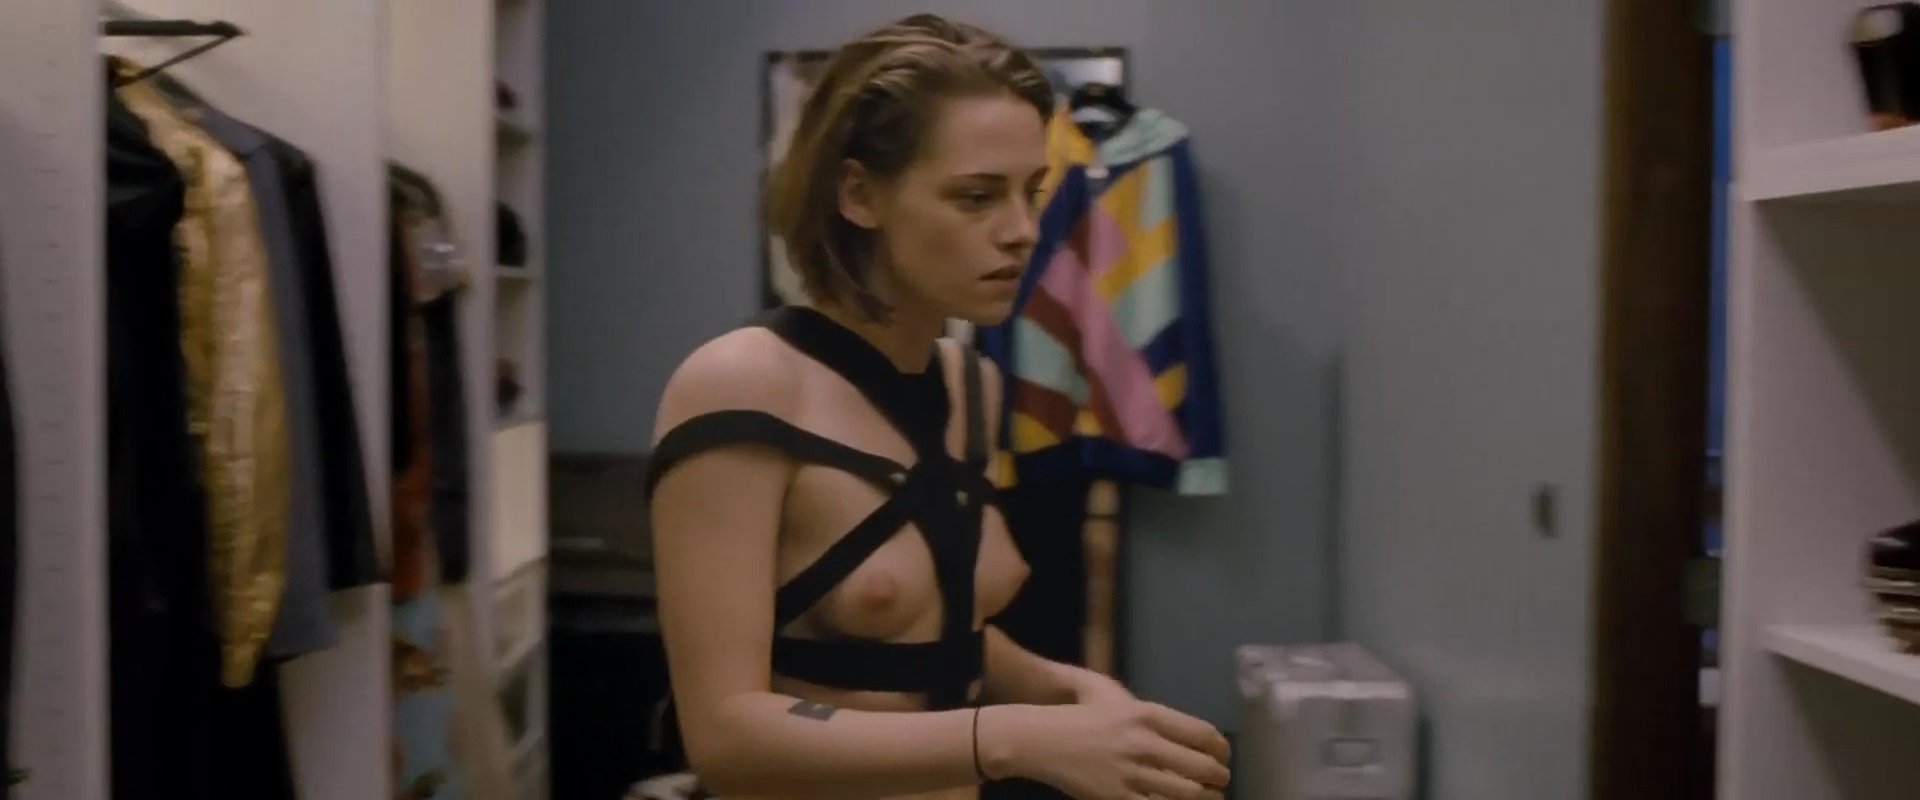 Kristen Stewart Nude - Personal Shopper (2016) HD 1080p Blu-ray